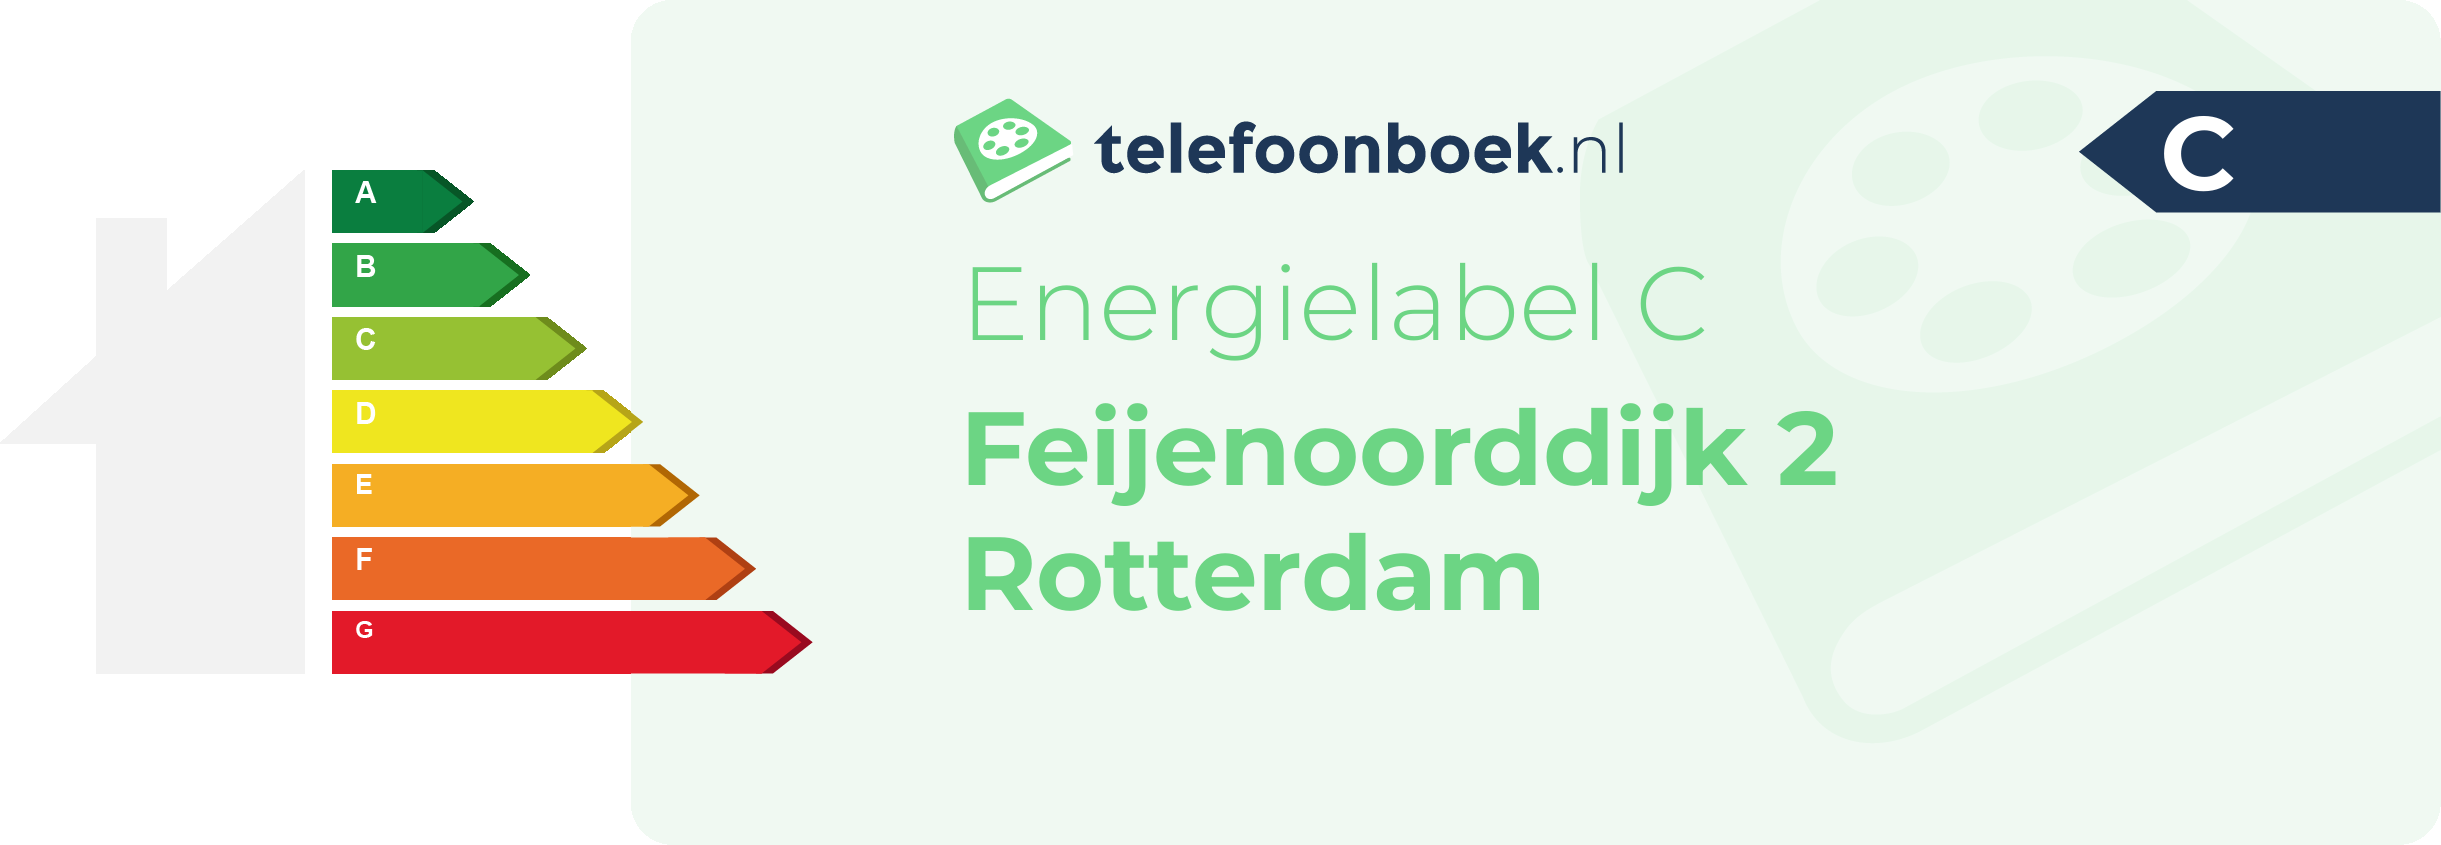 Energielabel Feijenoorddijk 2 Rotterdam